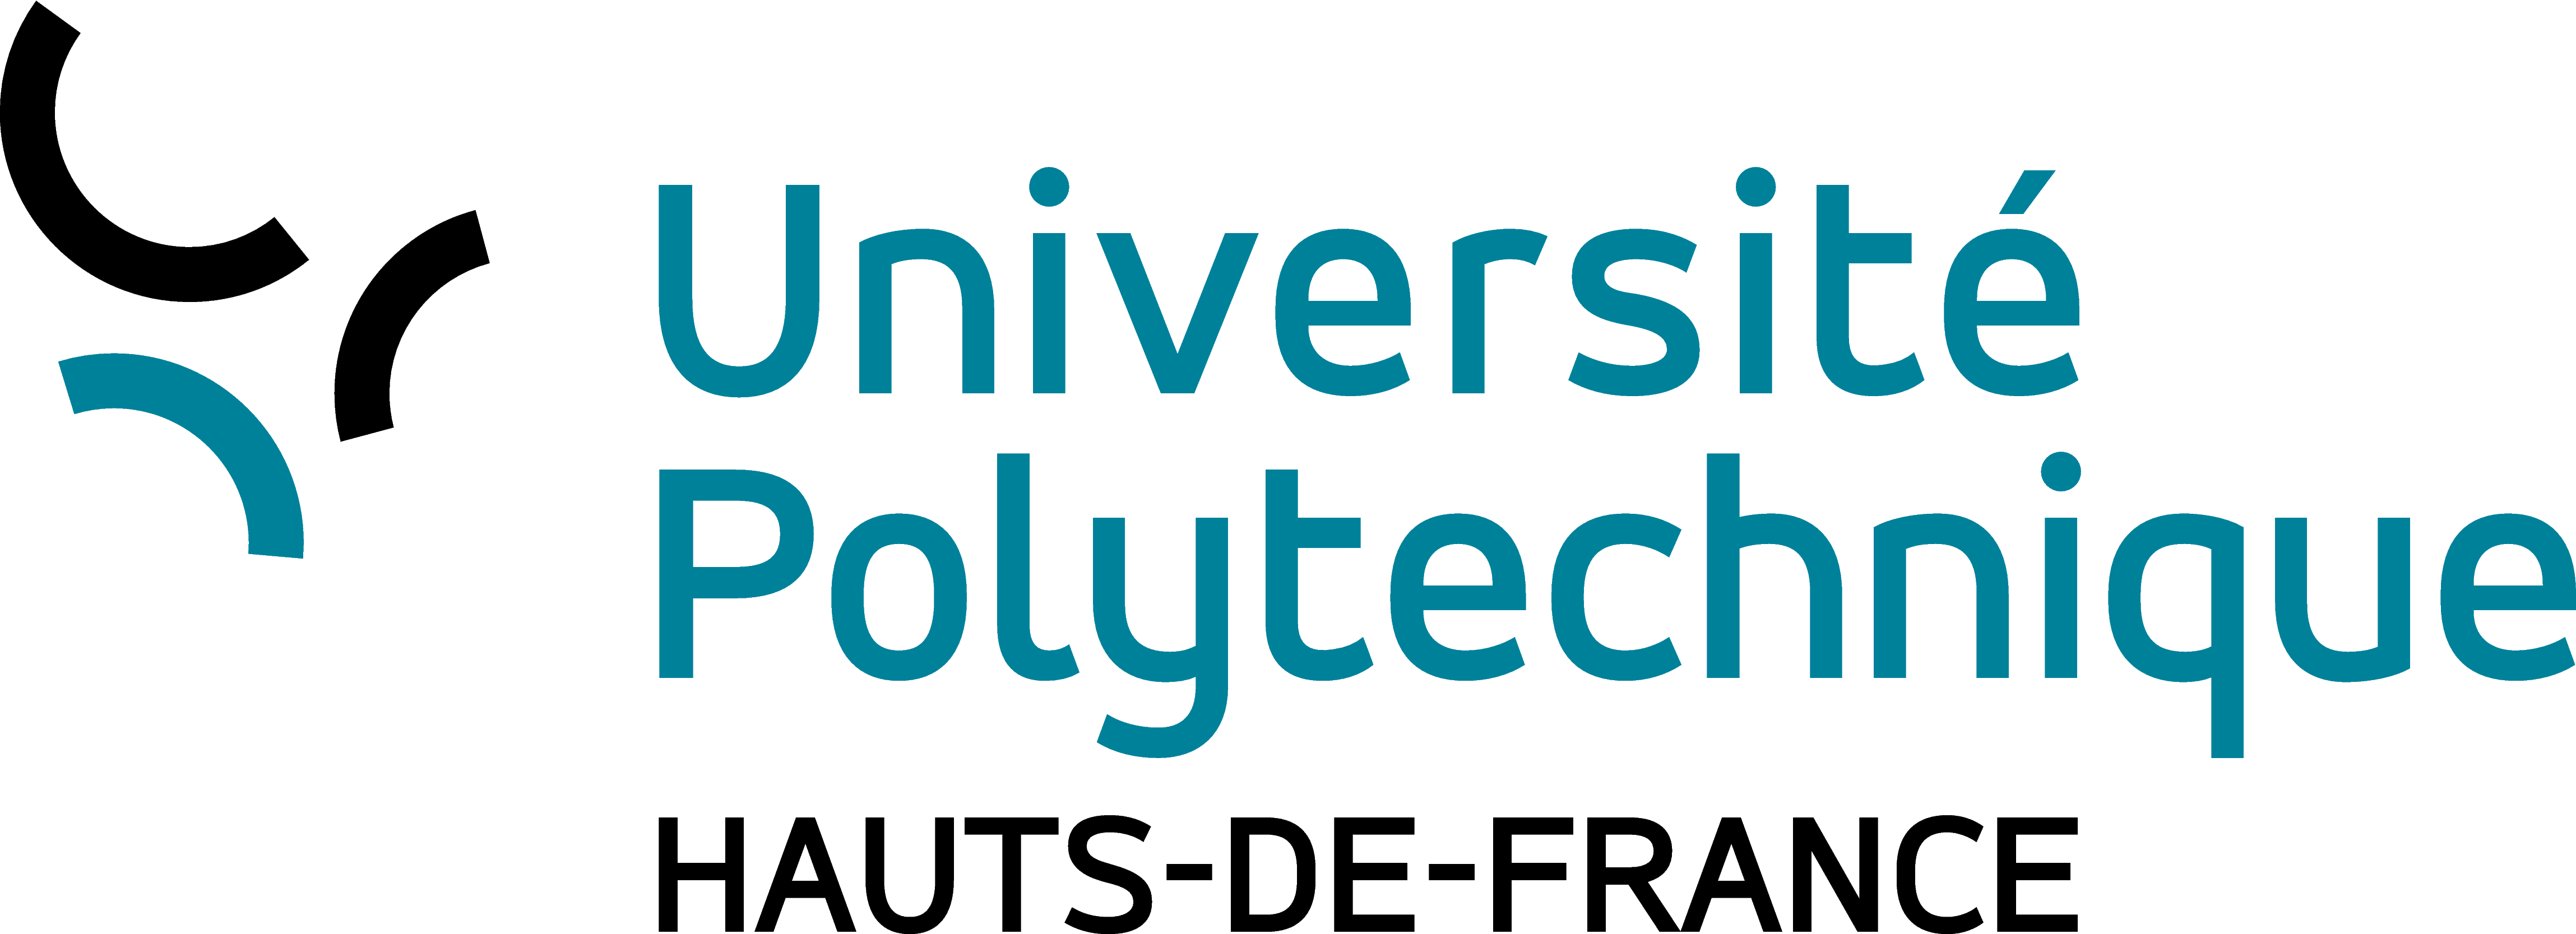 Lire le témoignage du signataire Université Polytechnique Hauts-de-France